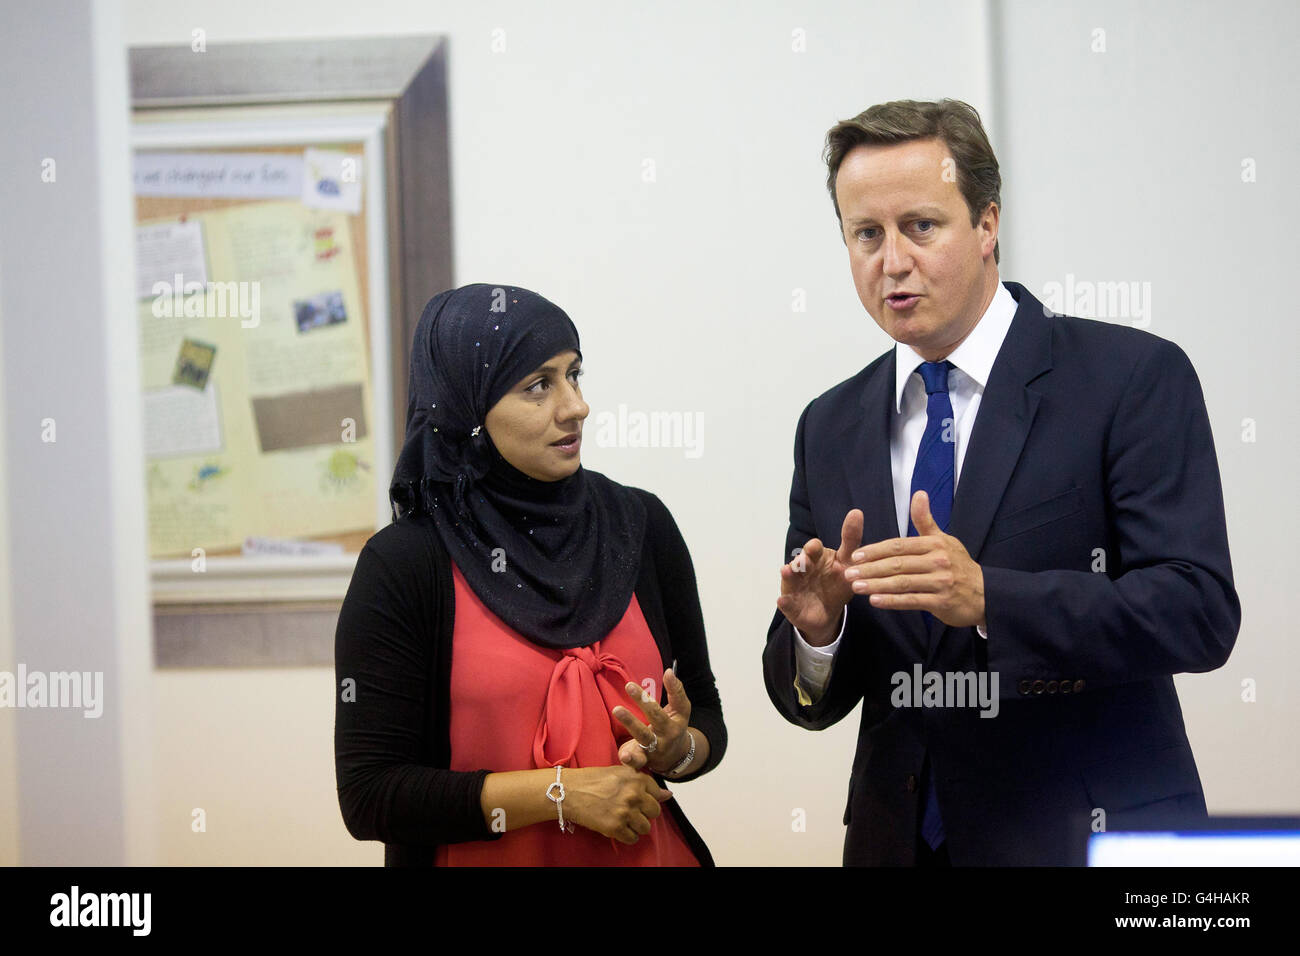 Le Premier ministre David Cameron s'entretient avec Shahida DIN lors d'une visite aux bureaux de l'A4E (action pour l'emploi) à Brixton, dans le sud de Londres. Banque D'Images